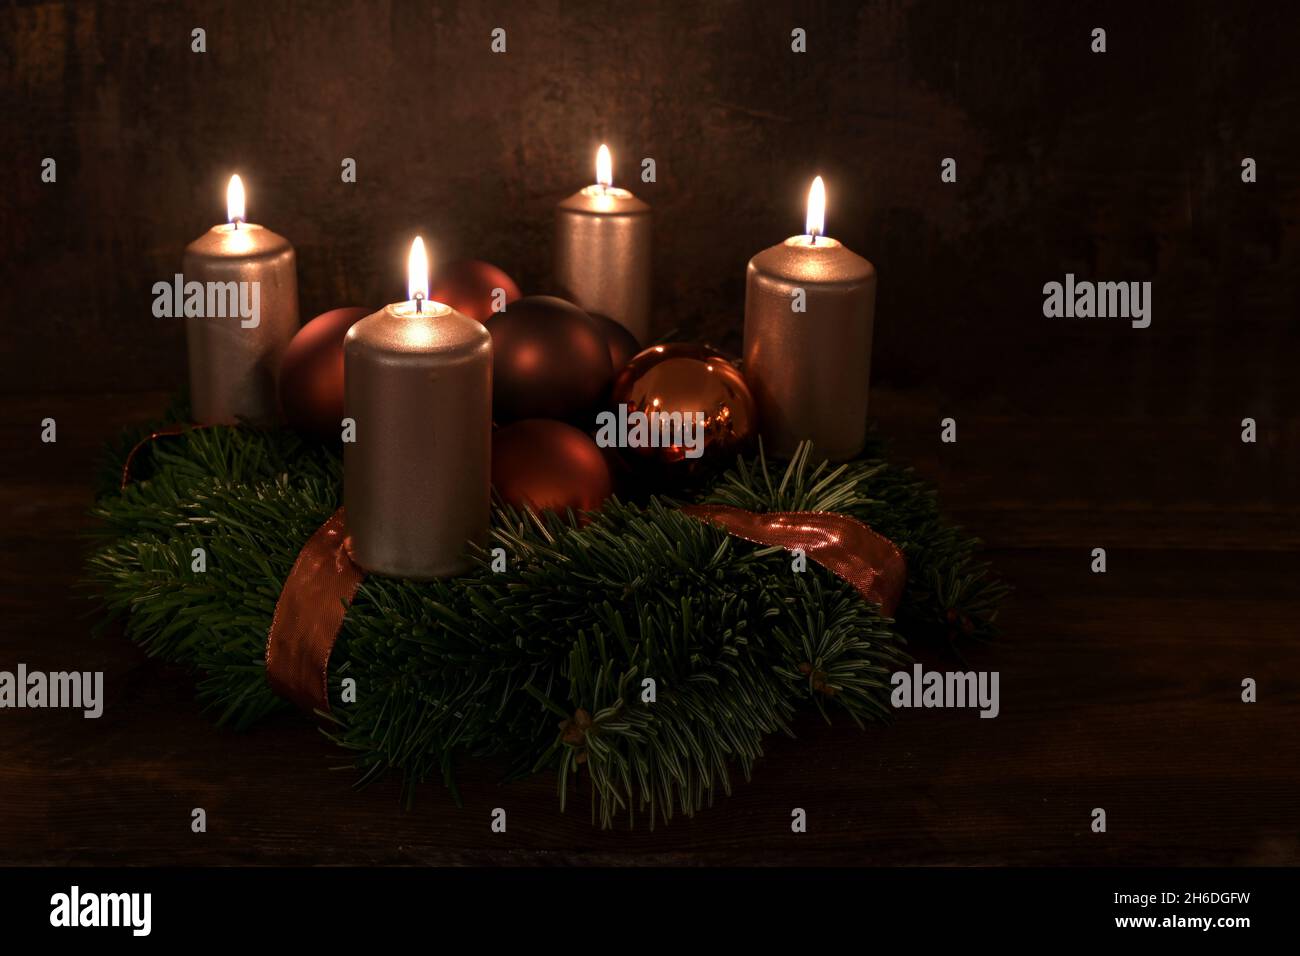 Petite couronne de l'Avent avec quatre bougies cuivrées éclairées et boules décoratives de Noël sur fond rustique brun foncé, sélection d'un espace de copie Banque D'Images